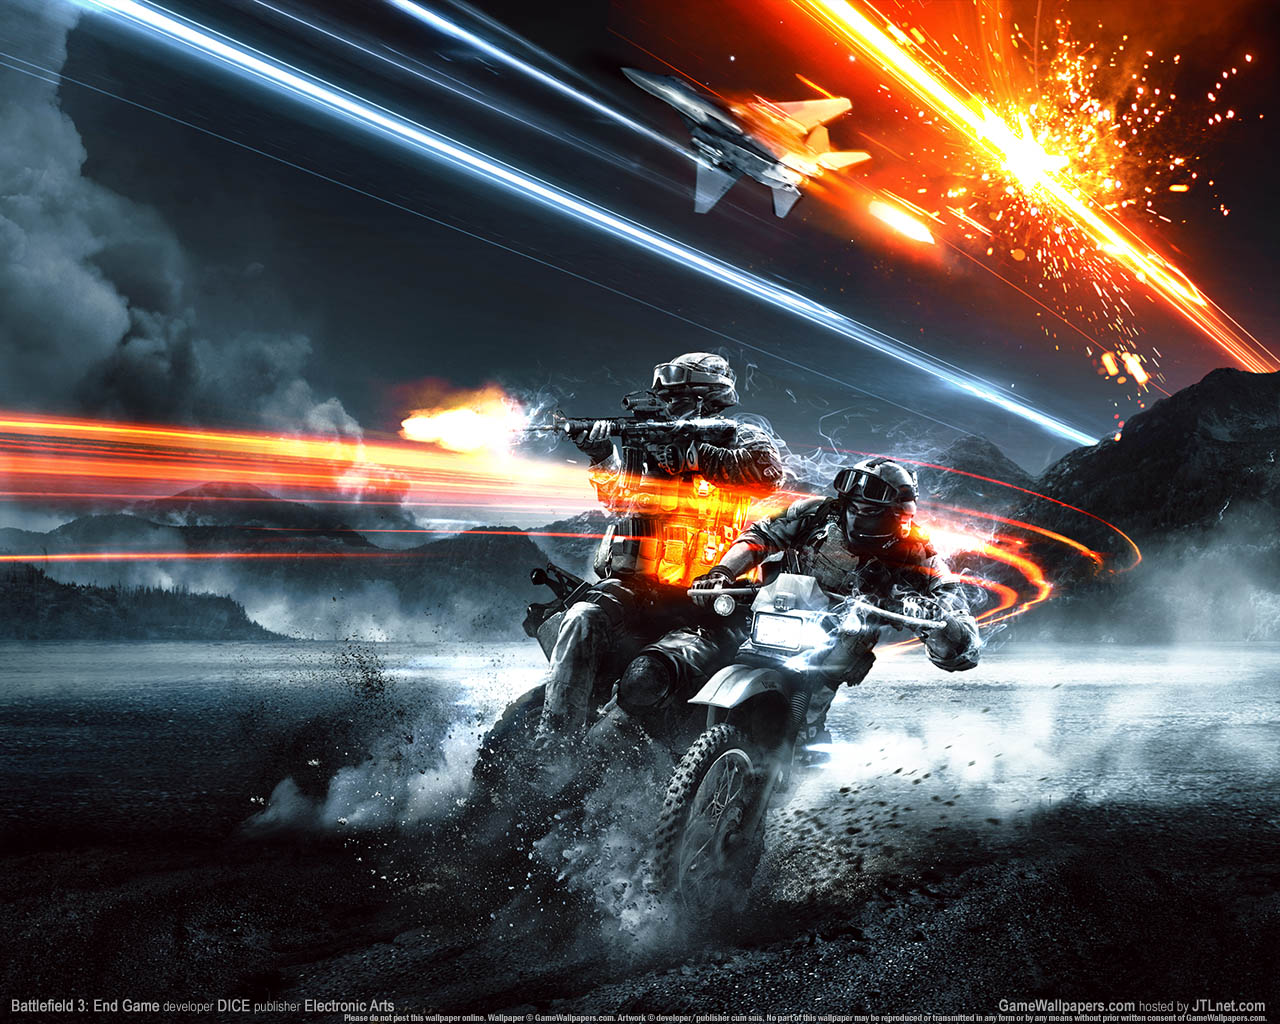 Battlefield 3%3A End Game fond d'cran 01 1280x1024